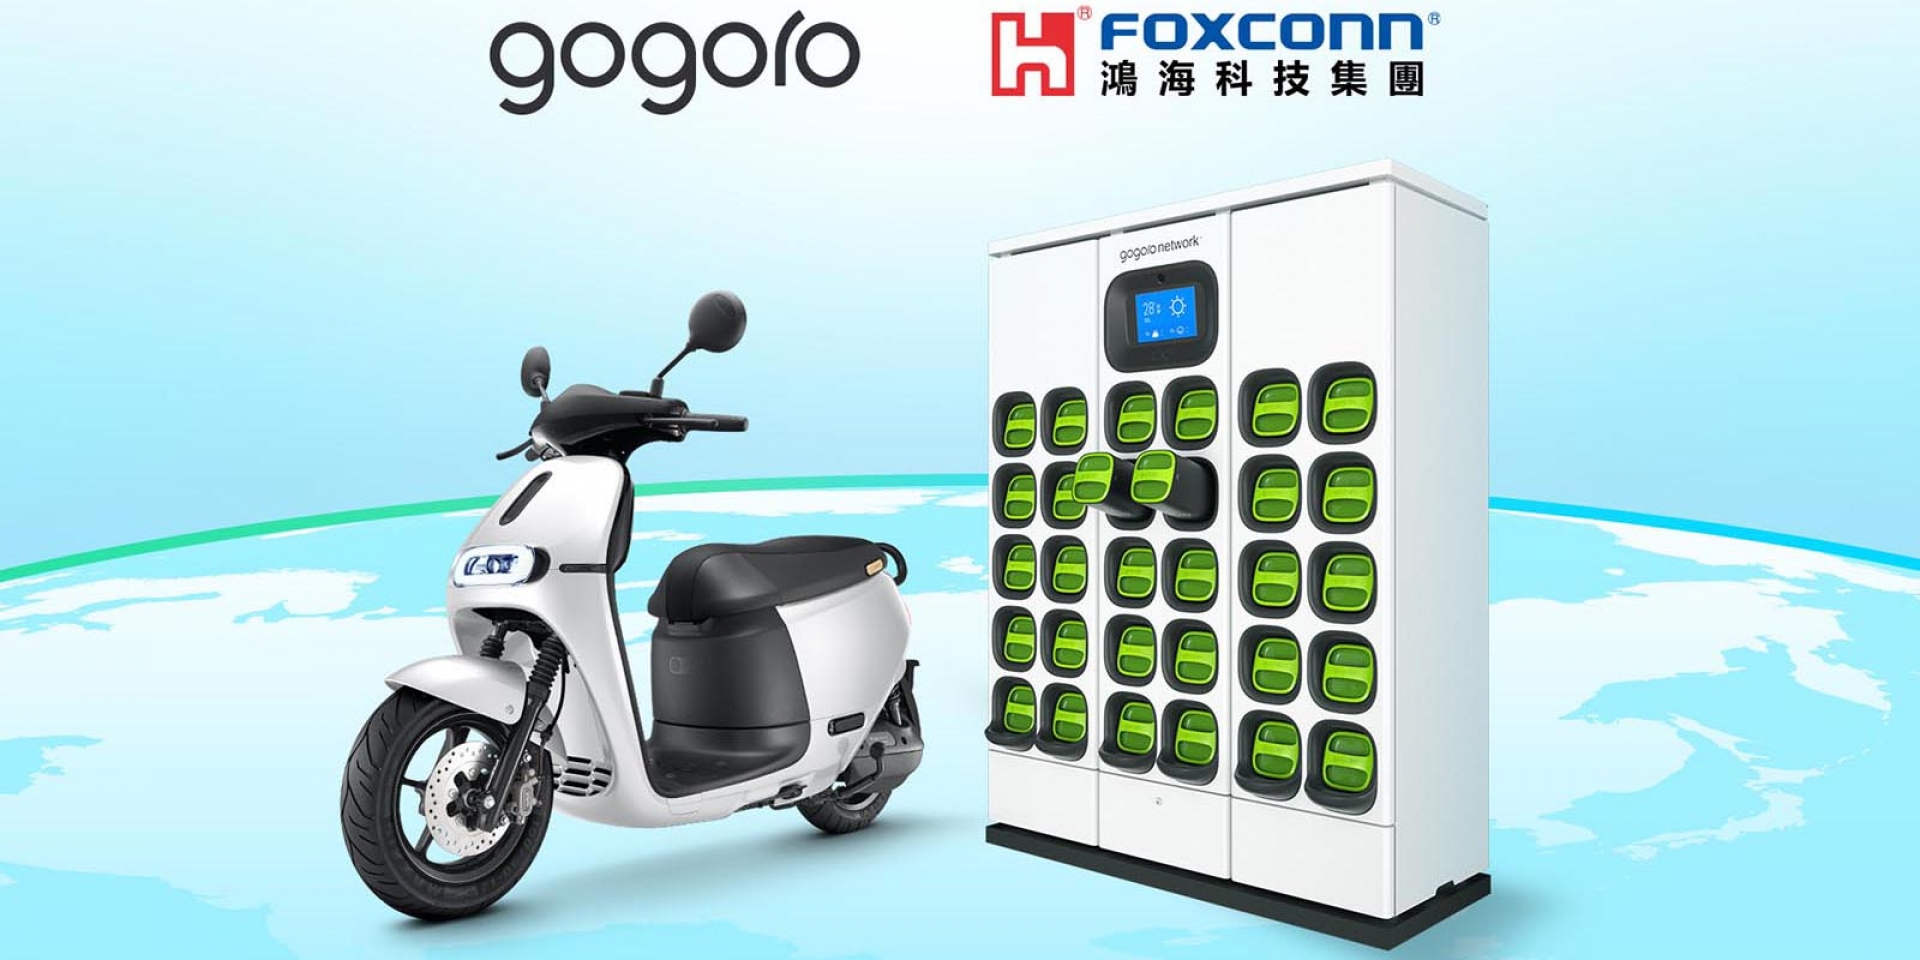 官方新聞稿。鴻海宣布與 Gogoro 策略聯盟 合作加速擴展電池交換系統與智慧電動機車